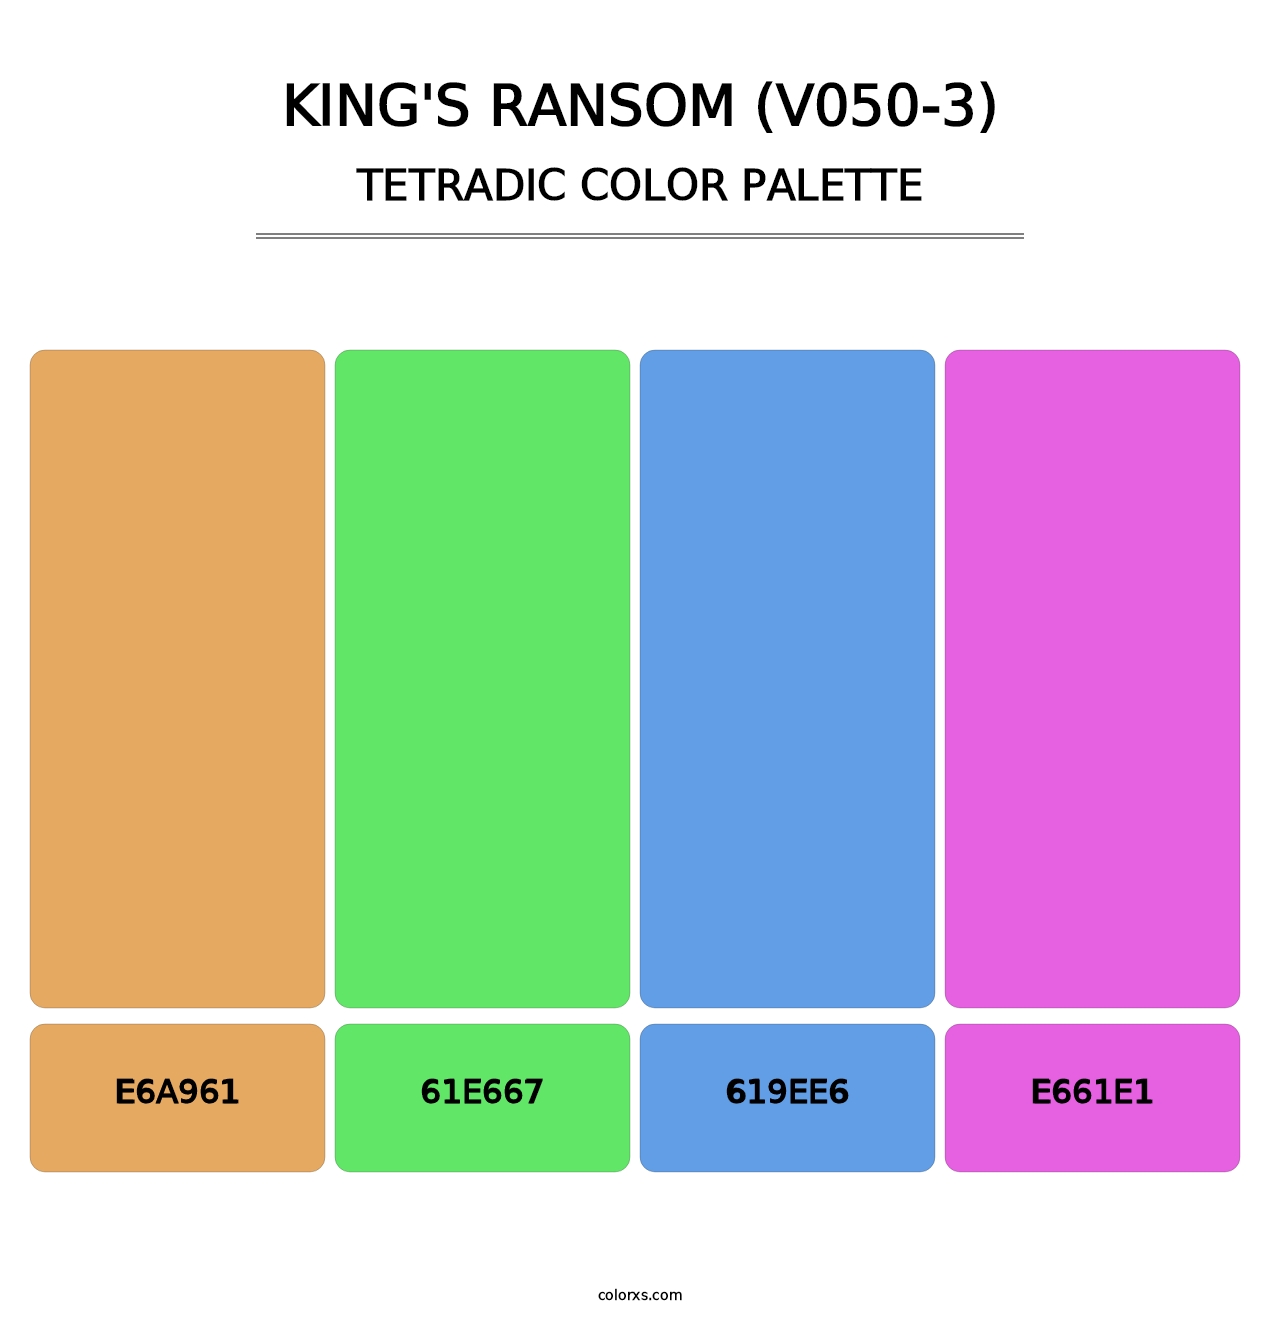 King's Ransom (V050-3) - Tetradic Color Palette